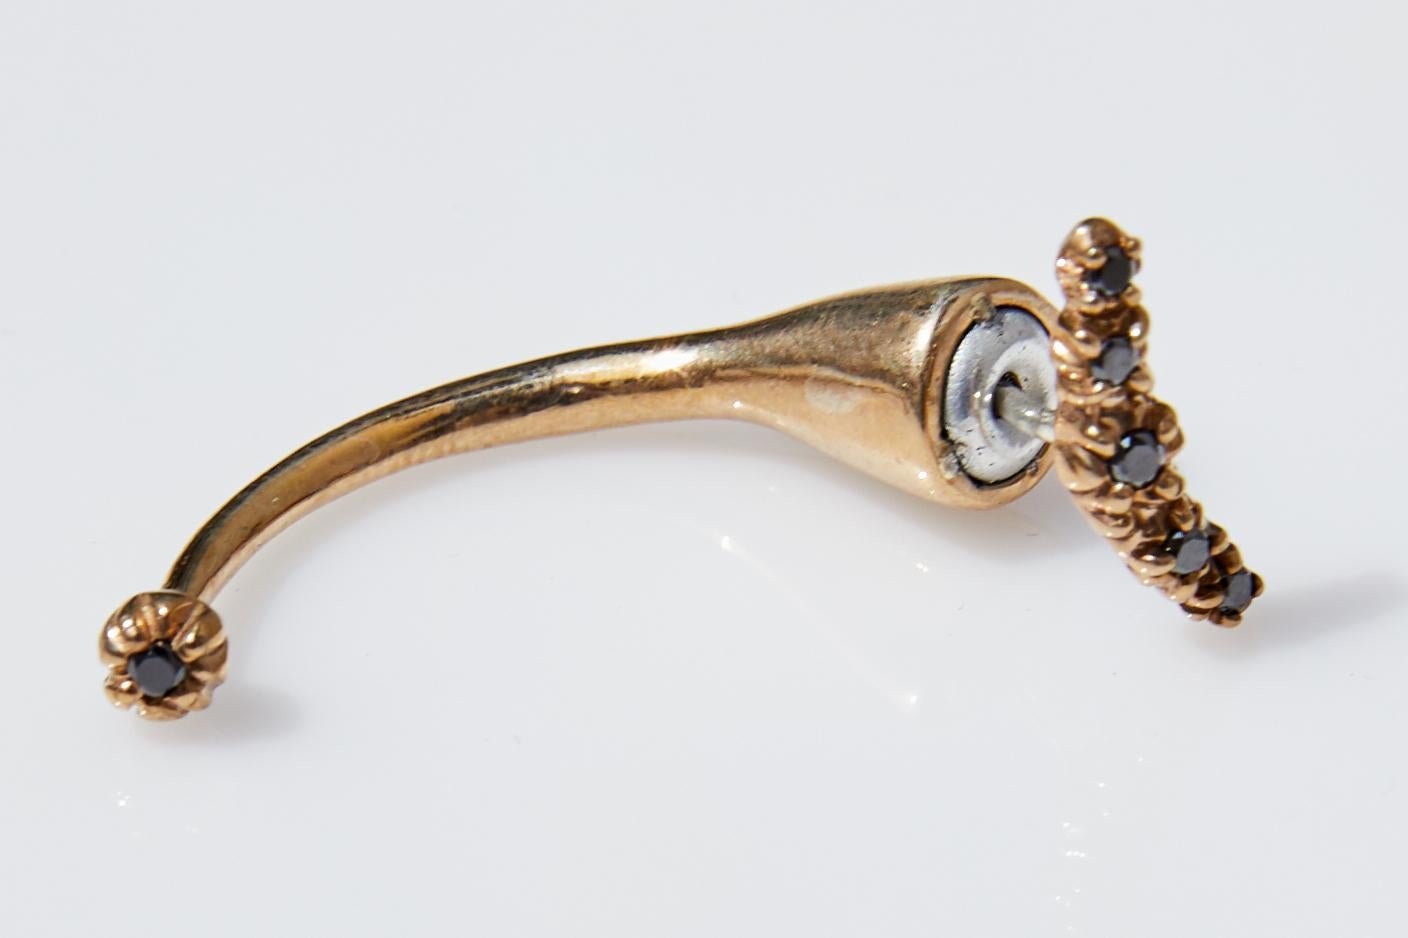 Brilliant Cut Earring Piercing Gold Black Diamond Single Earring J Dauphin For Sale